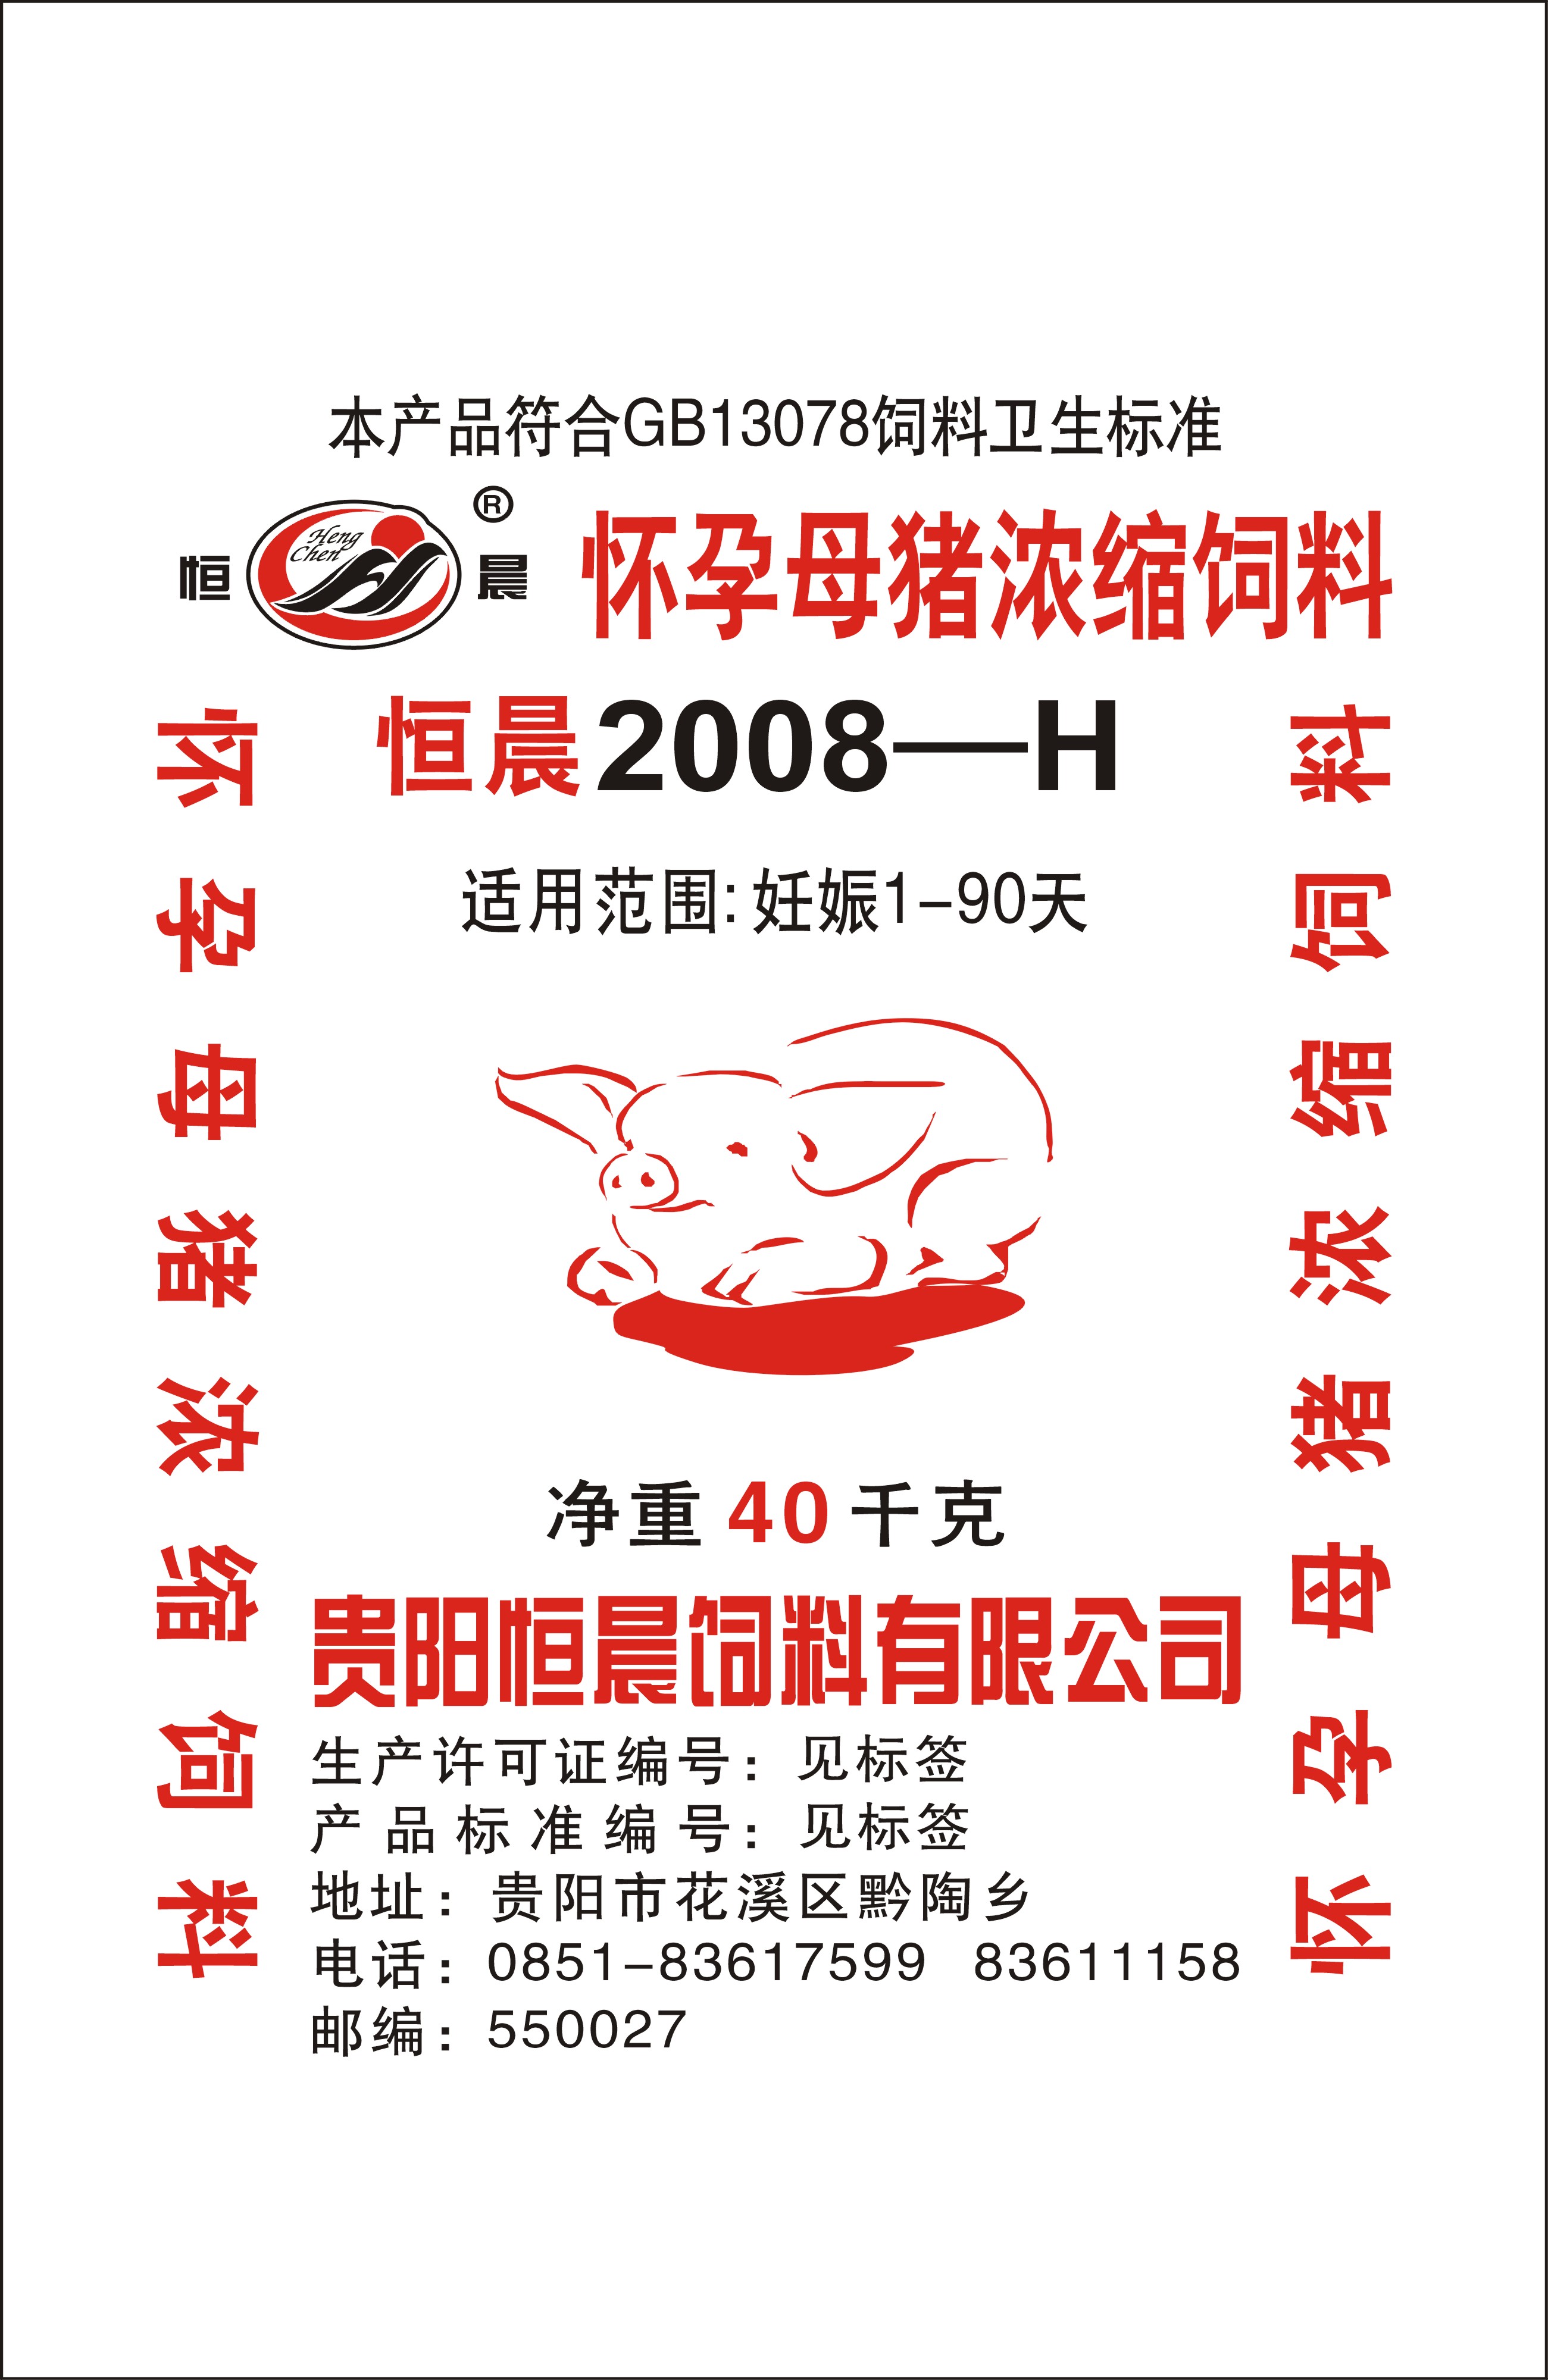 恒晨2008-H懷孕母豬濃縮飼料